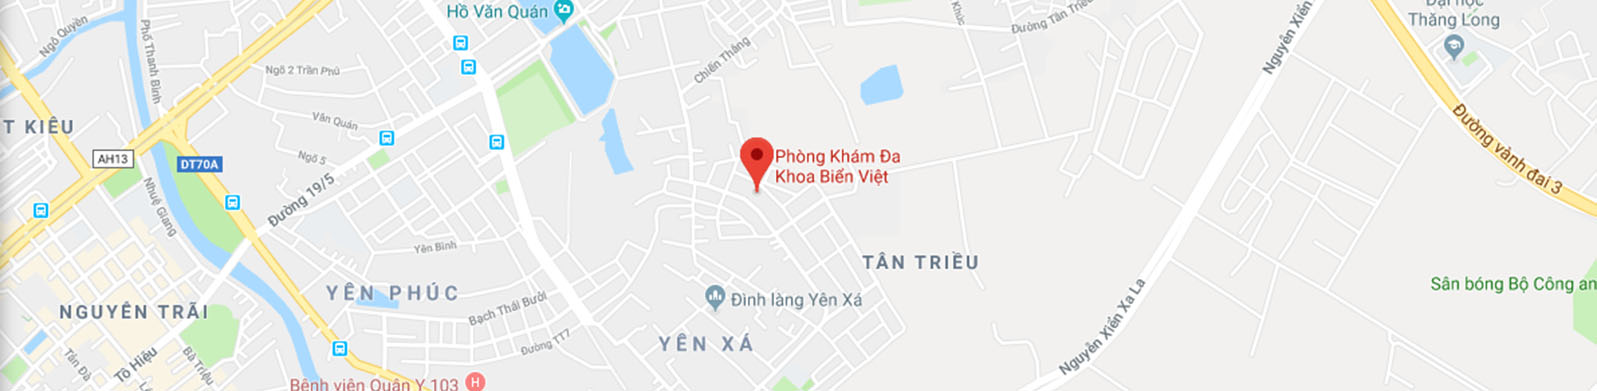 Bảng giá Dịch vụ tại Phòng khám đa khoa Biển Việt